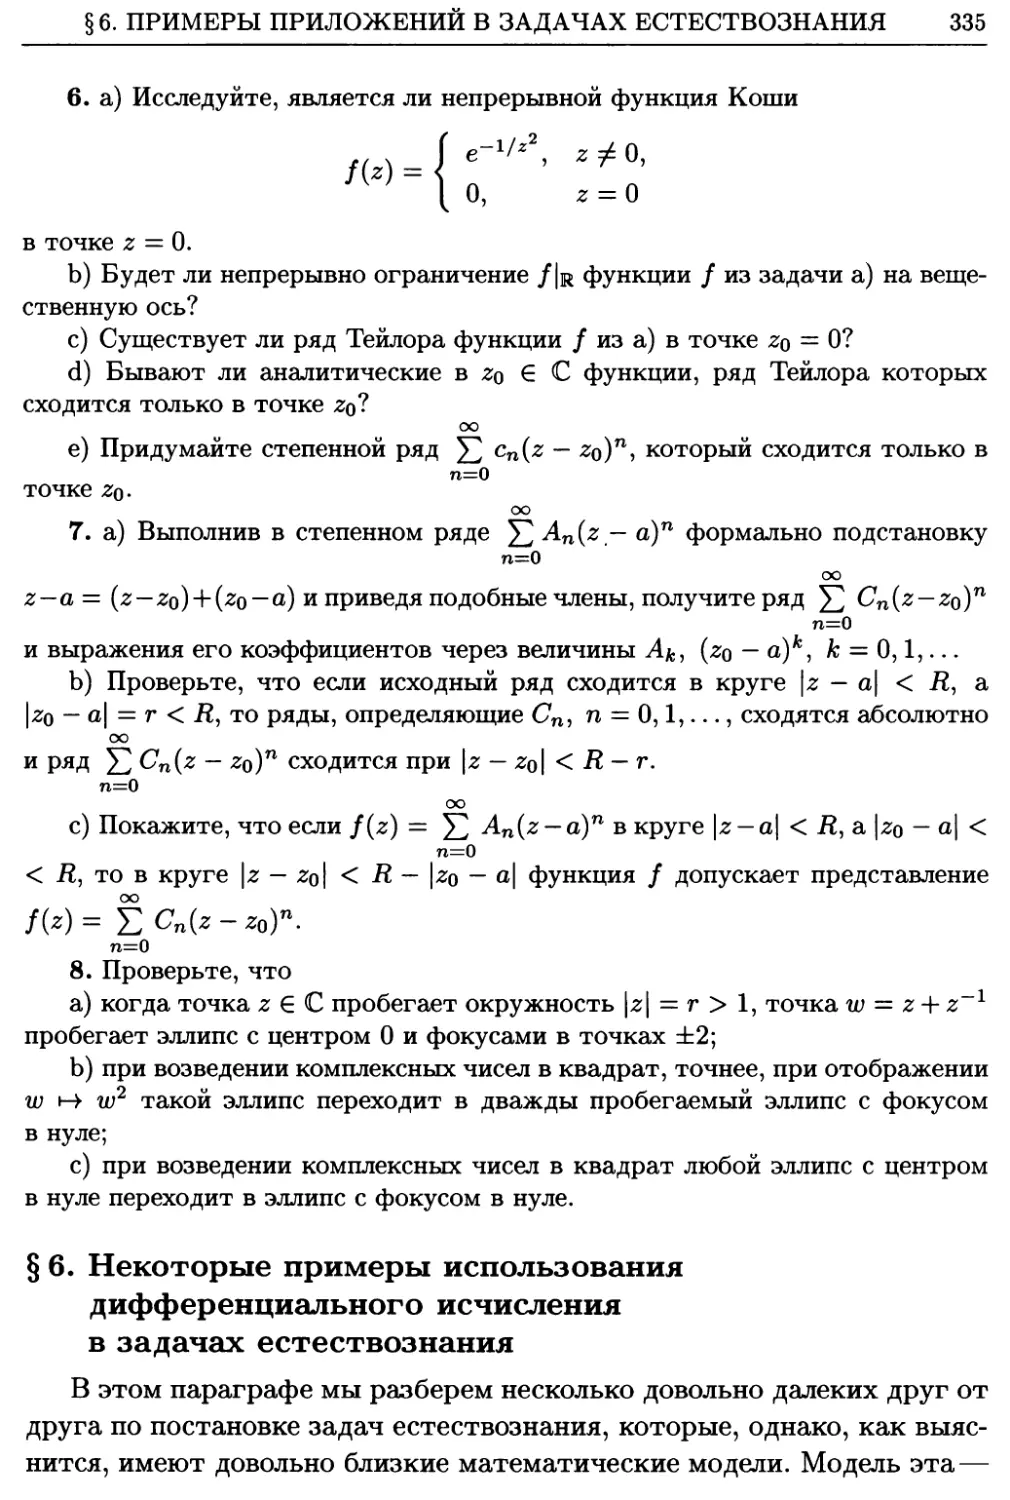 §6. Некоторые примеры использования дифференциального исчисления в задачах естествознания